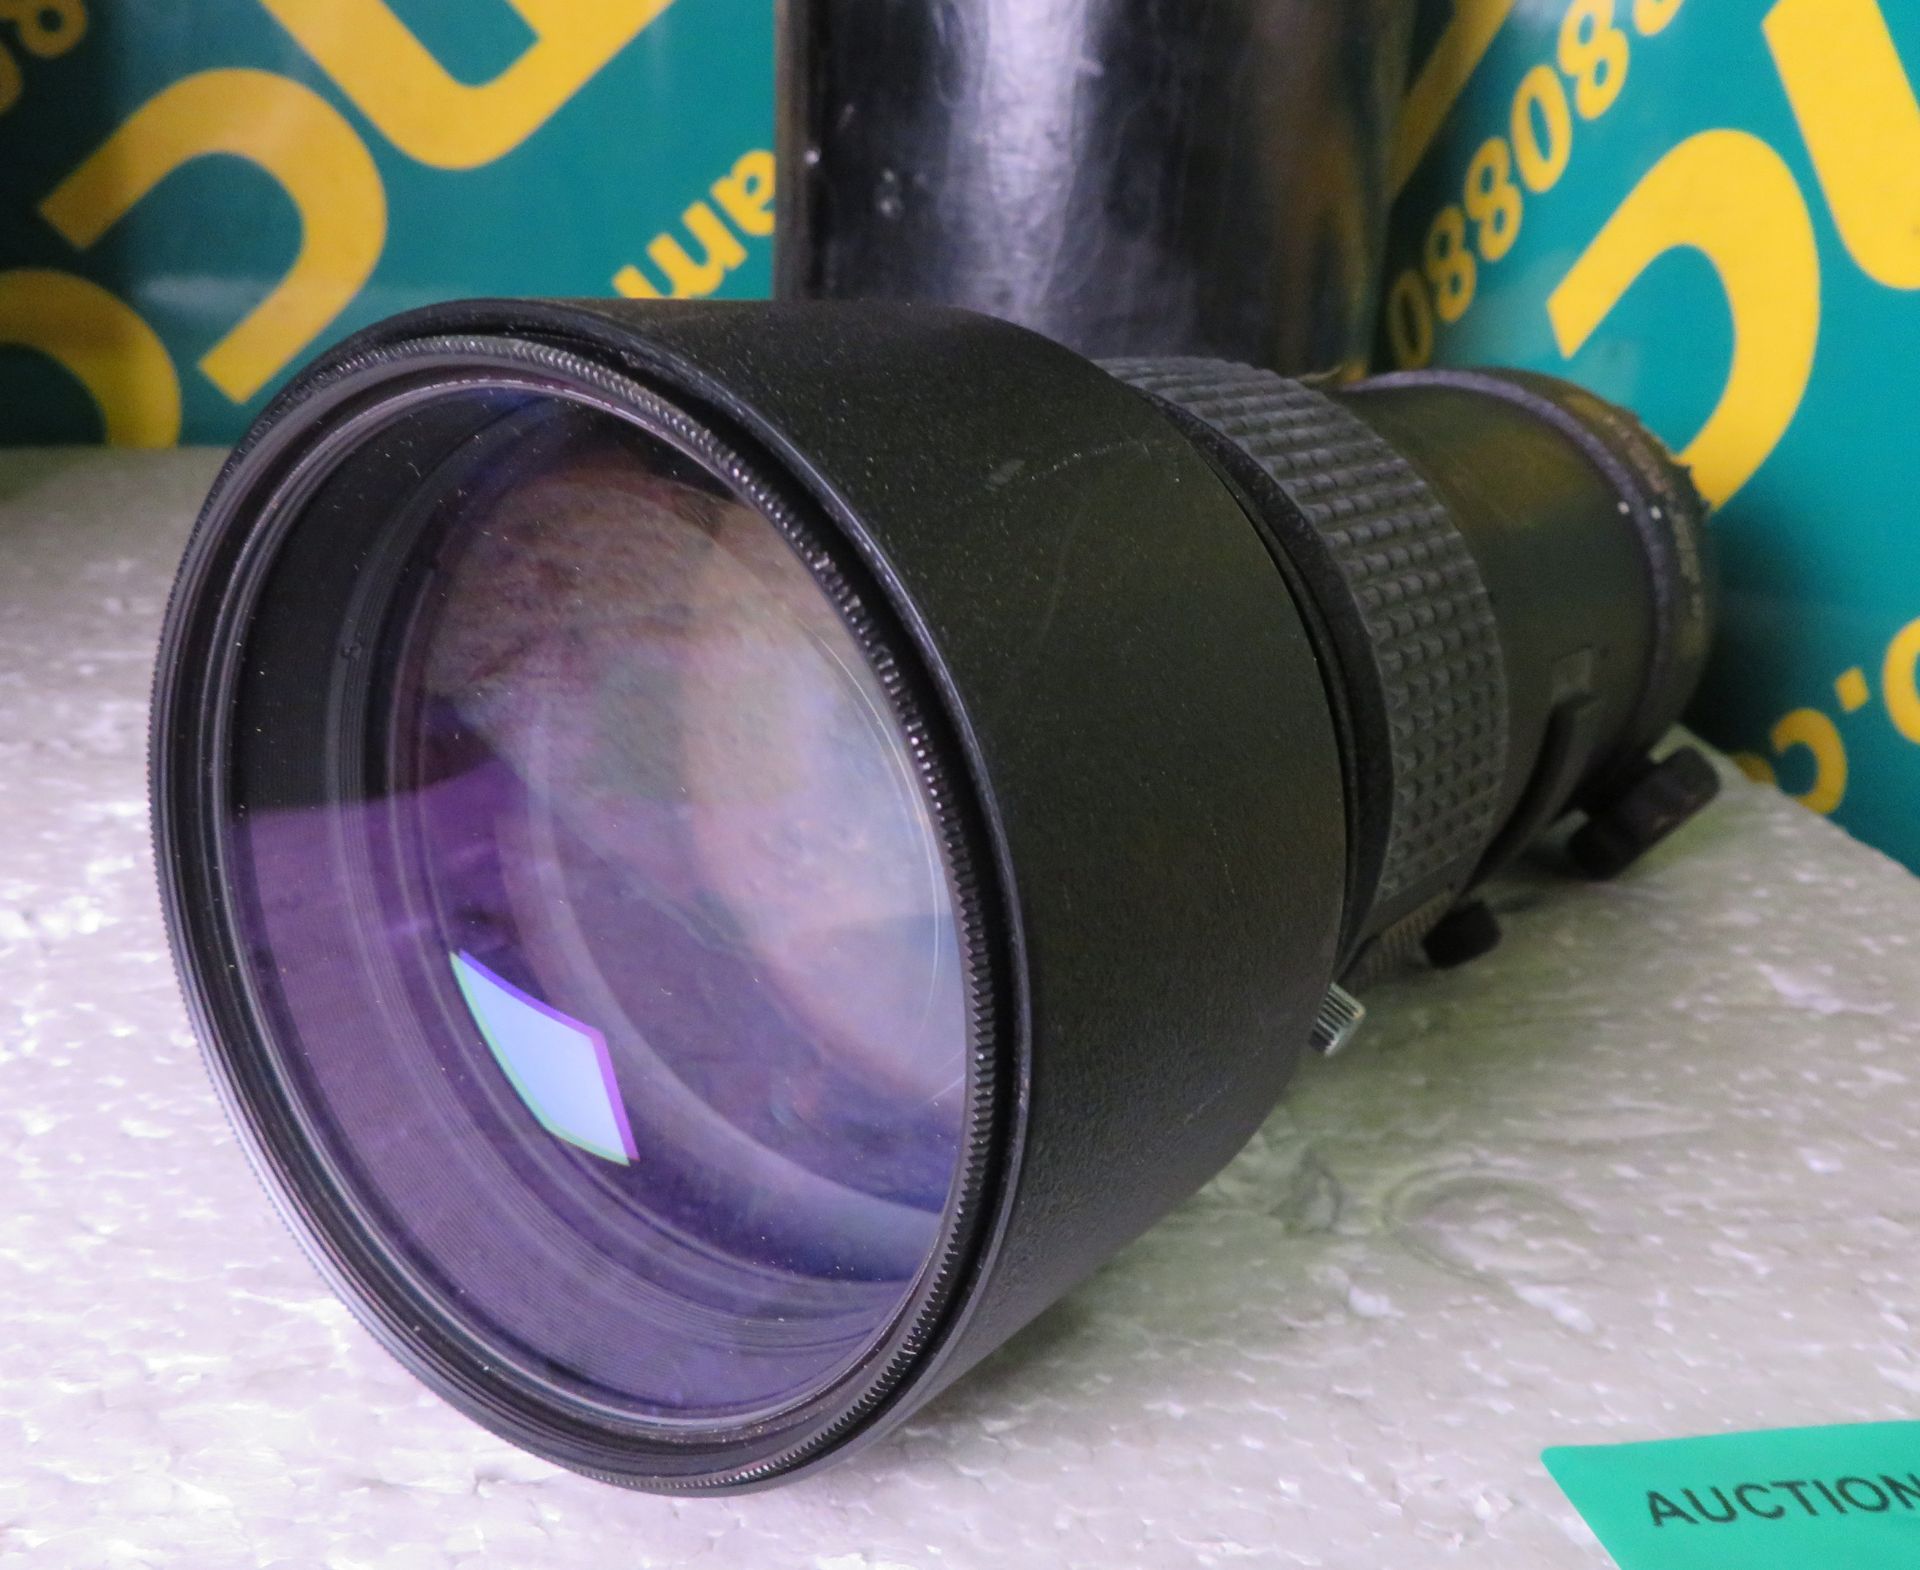 Nikon ED AF Nikkor 300mm 1:4 Lens - serial no. 214411 & Nikon CL-42 Case - Image 3 of 5